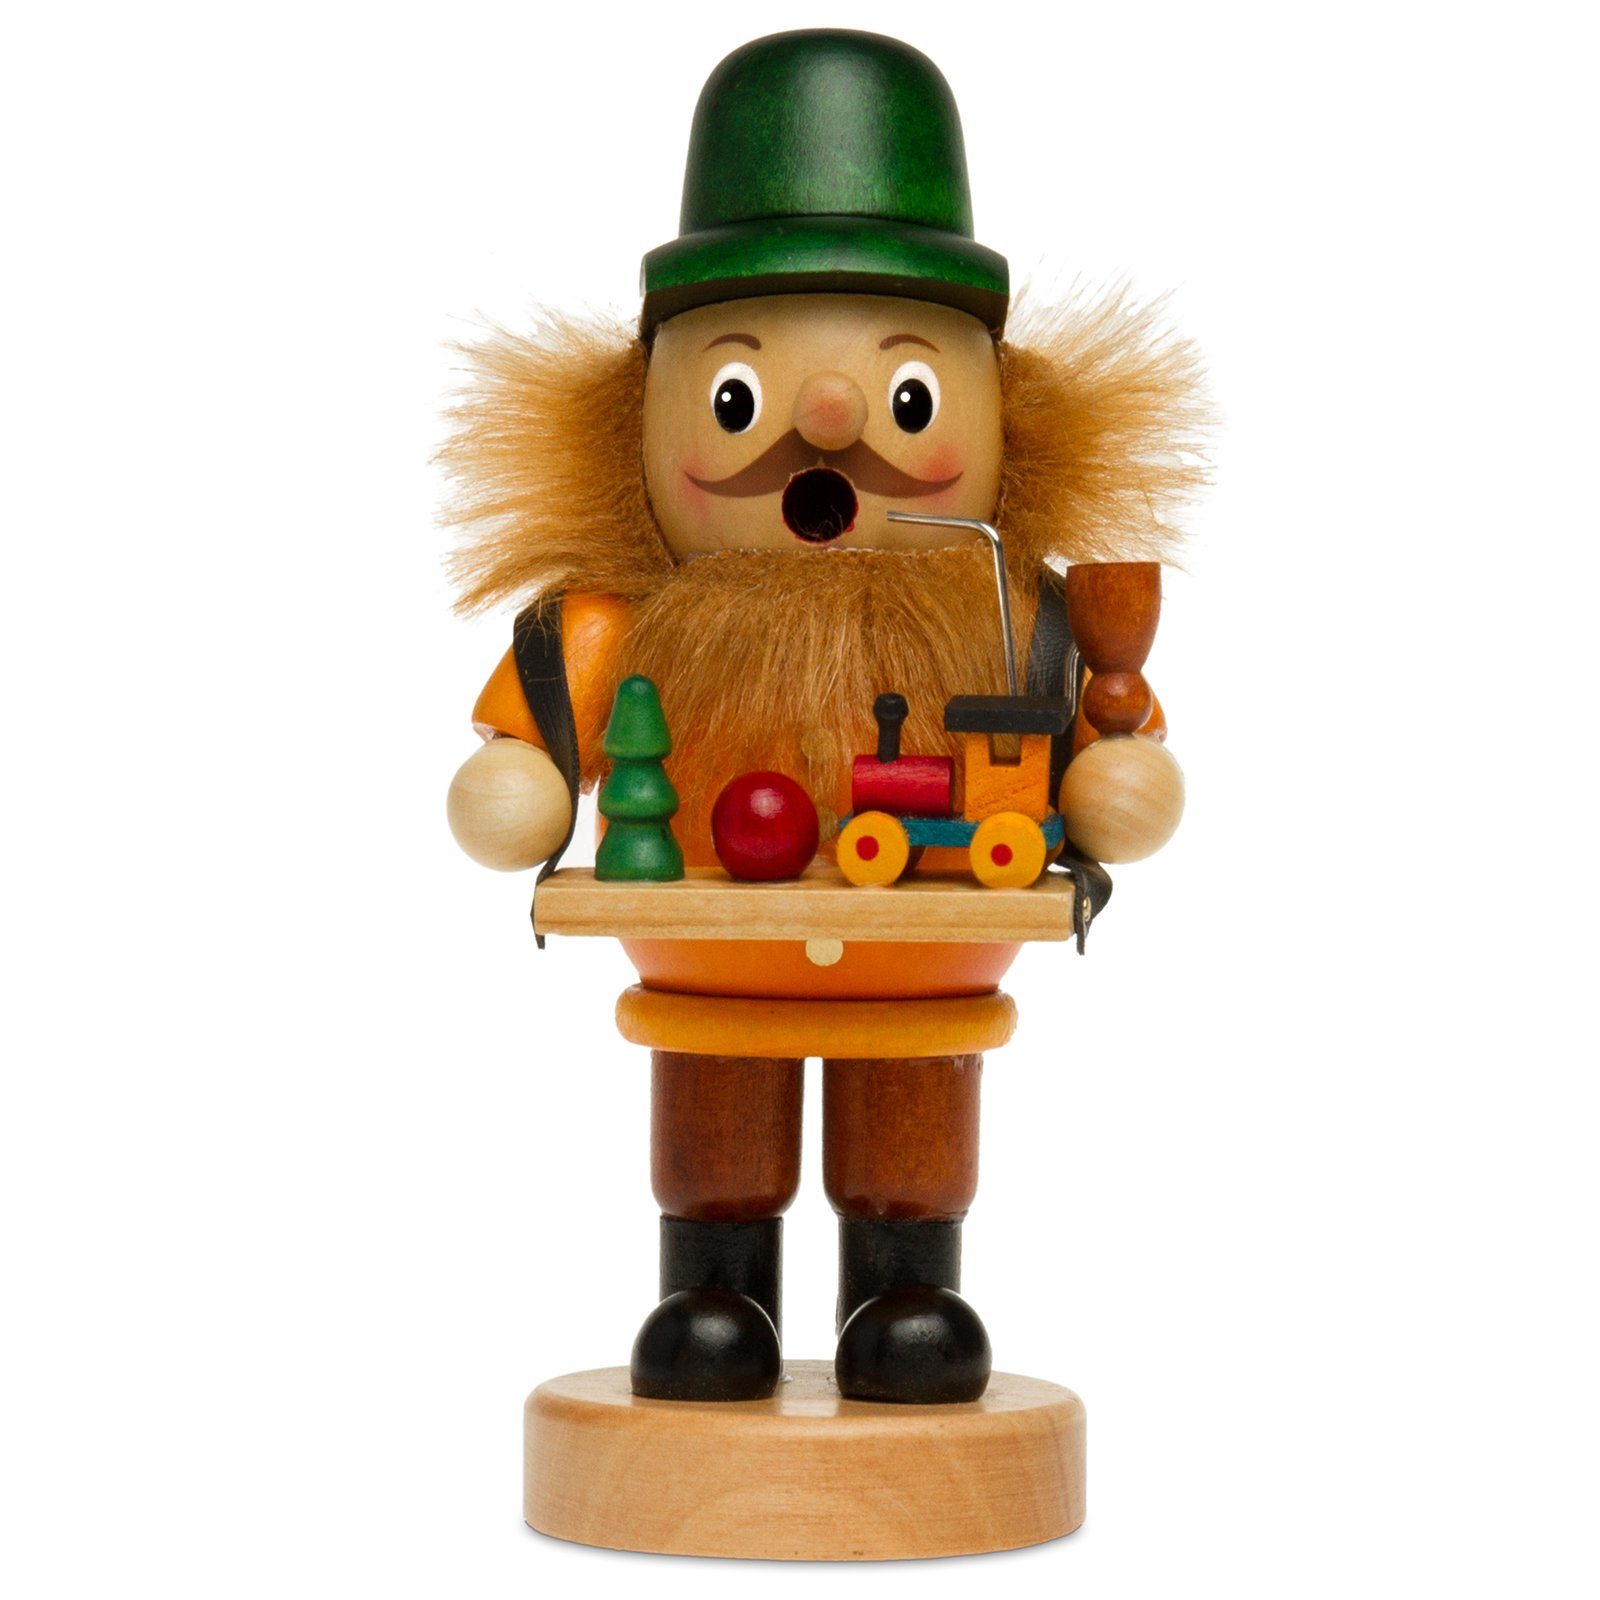 SIKORA Weihnachtsfigur RM-B B13 aus Spielzeughändler gelb Räuchermännchen verschiedene Motive Holz 